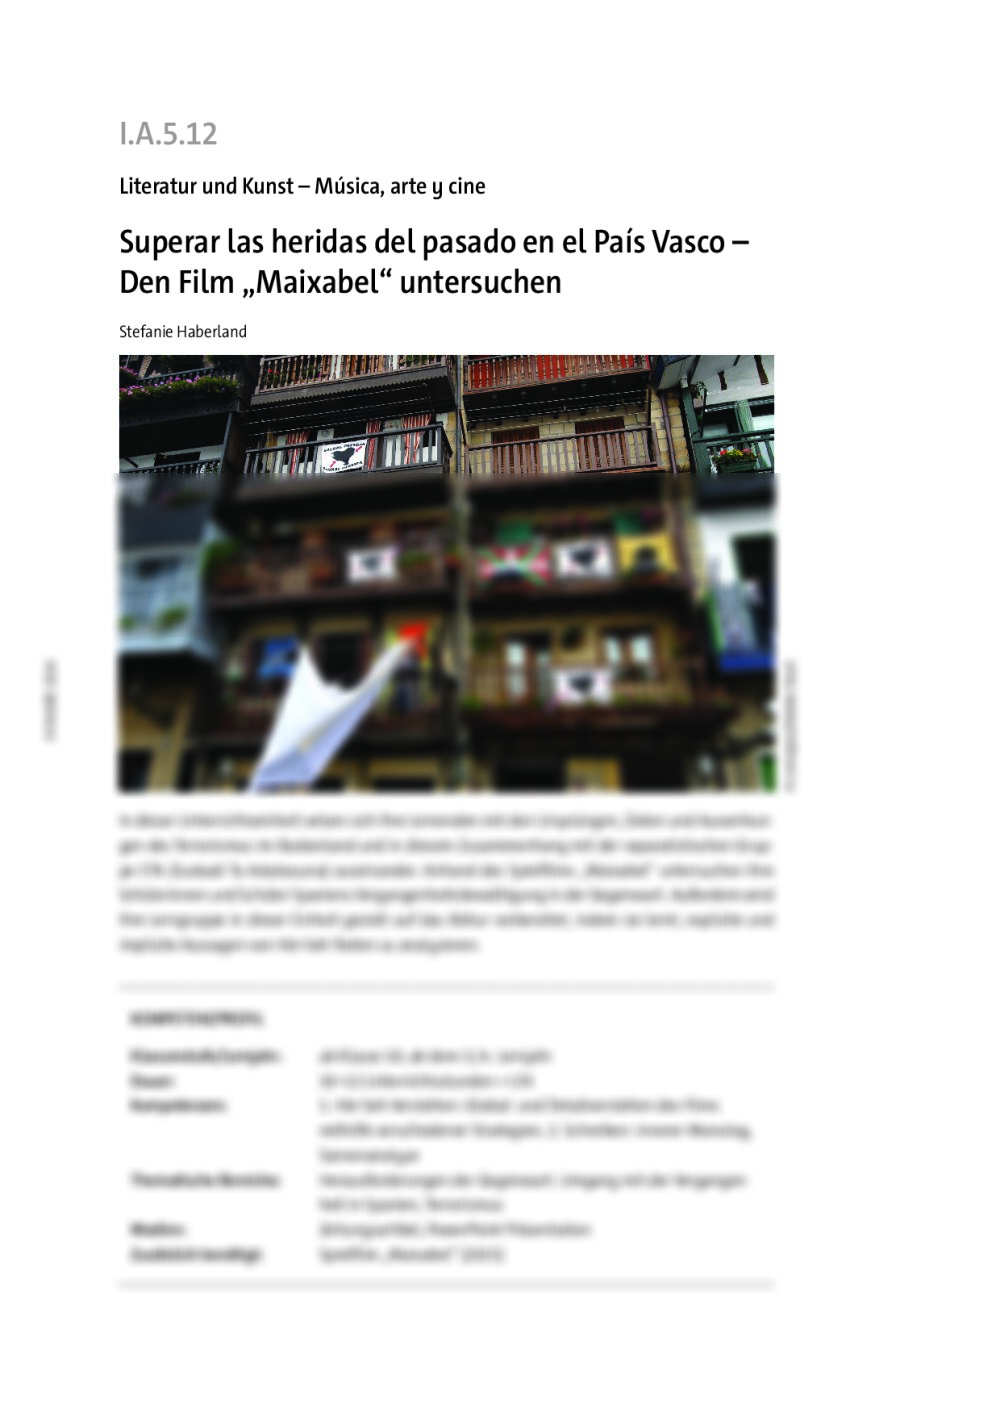 Superar las heridas del pasado en el País Vasco - Seite 1